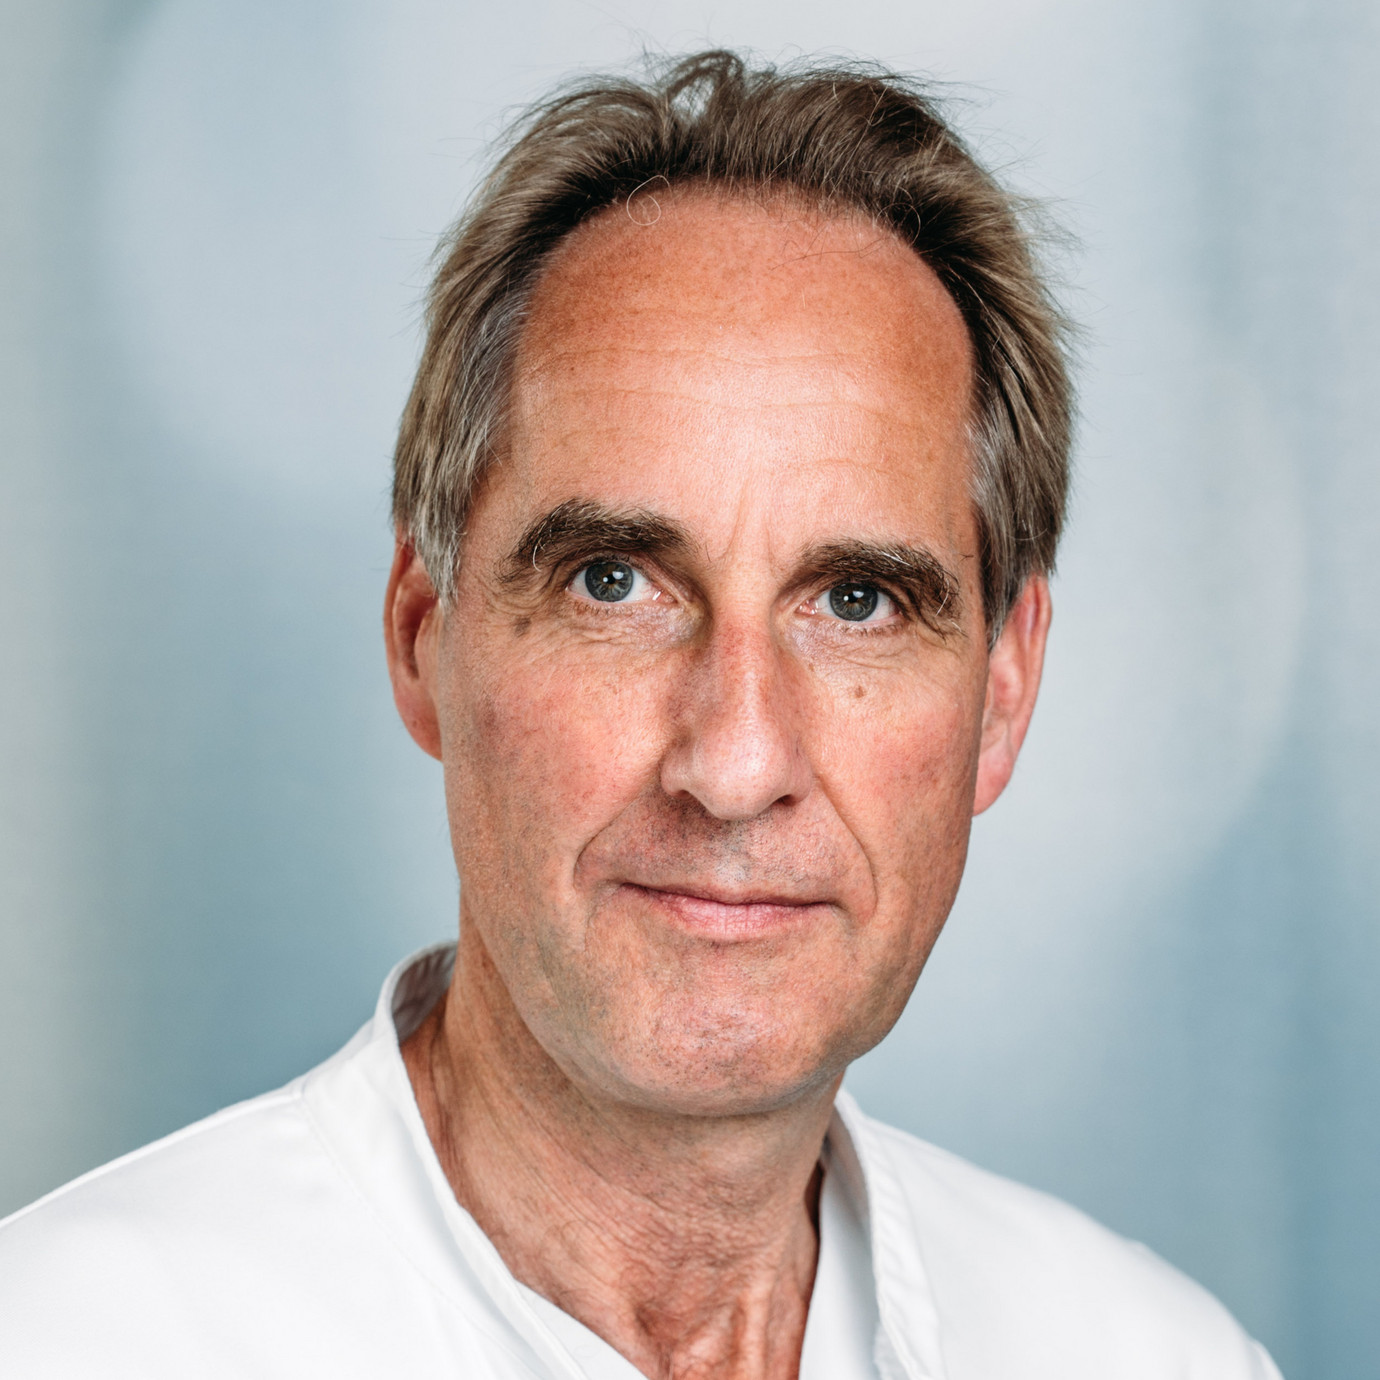 Porträt Prof. Dr. med. Thorsten Steiner, Chefarzt Klinik für Neurologie, varisano Klinikum Frankfurt Höchst